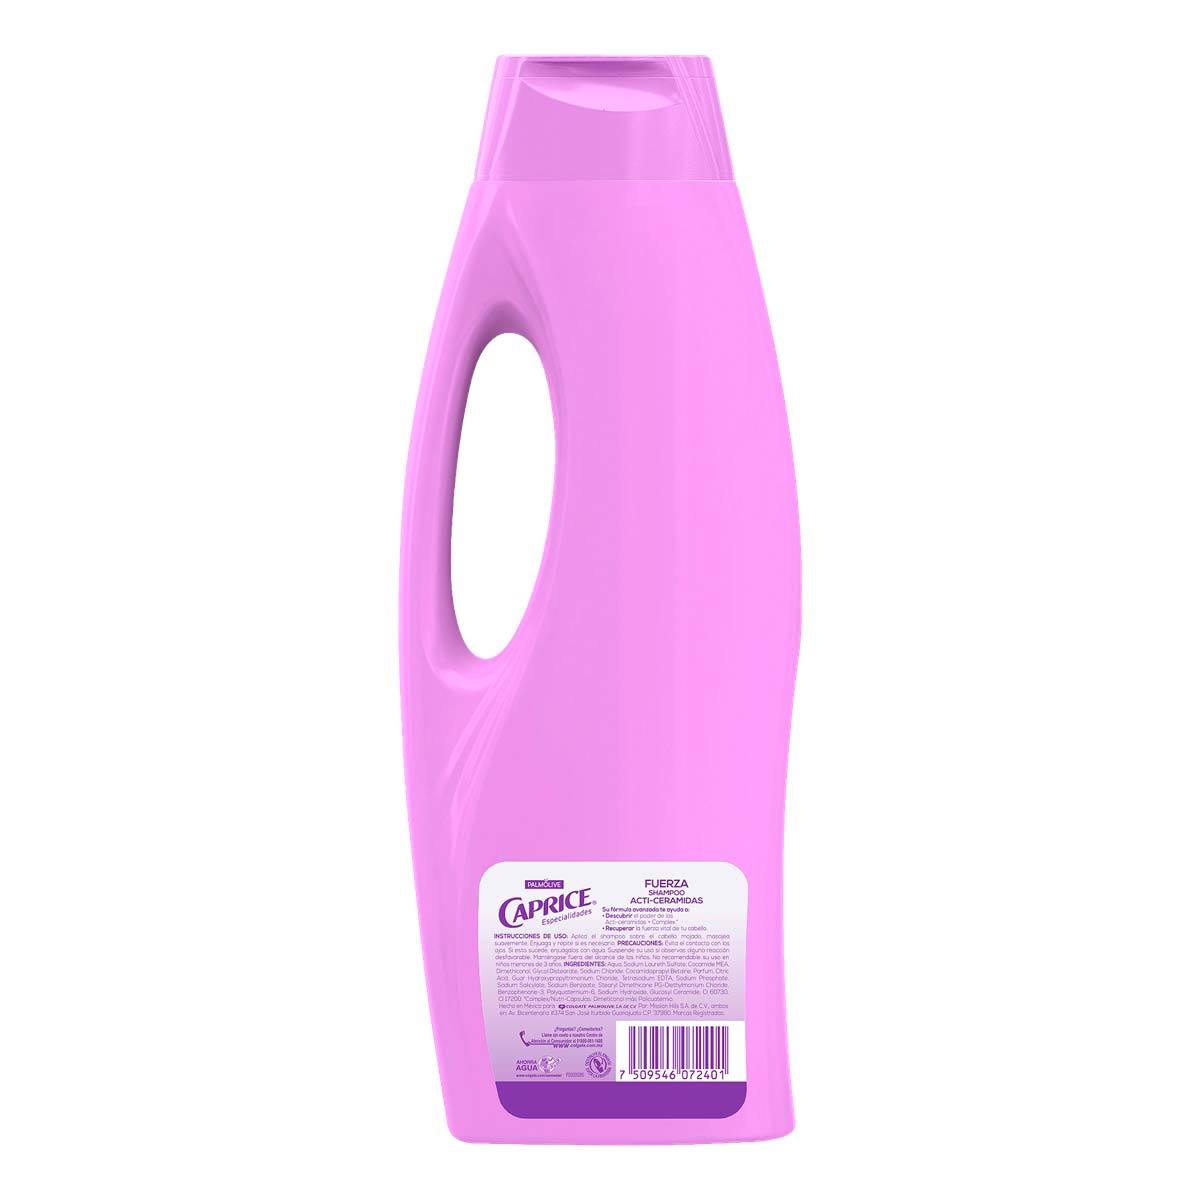 Shampoo Caprice Especialidades Fuerza Acti-ceramidas 750 ml